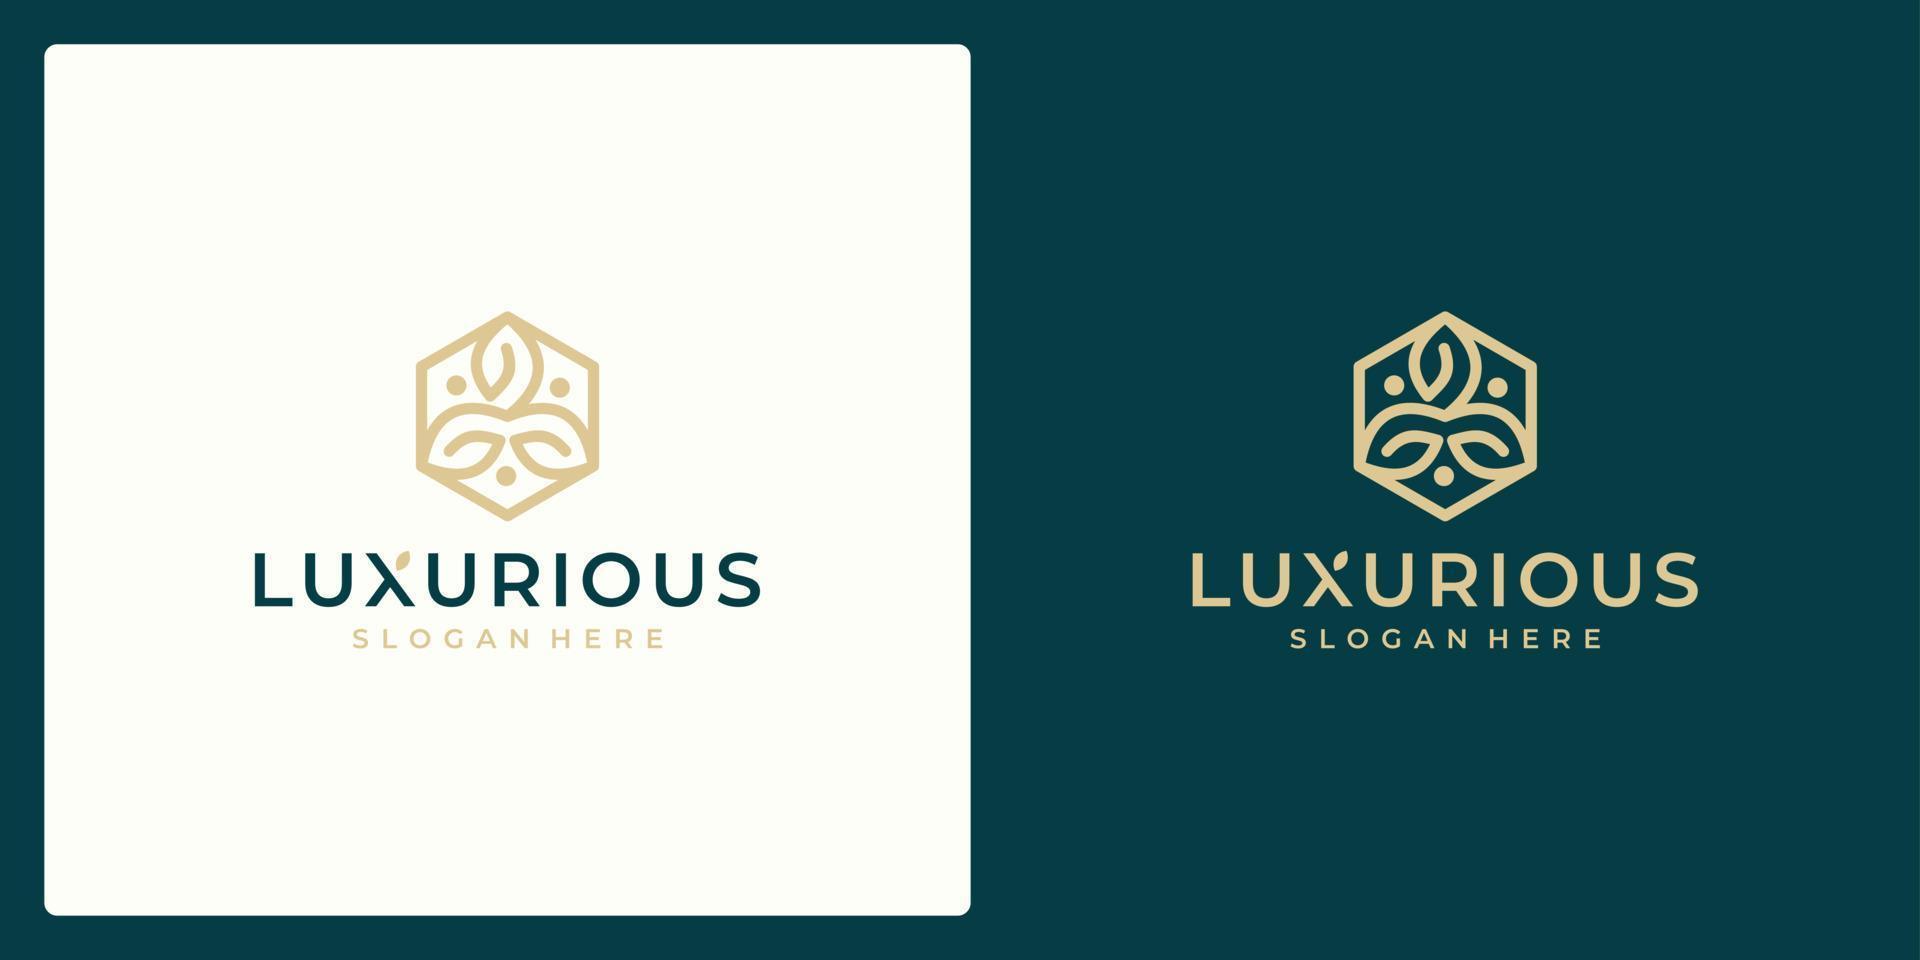 conceito de design de logotipo de luxo, logotipo de flor de lótus, modelo de logotipo de beleza ou spa vetor